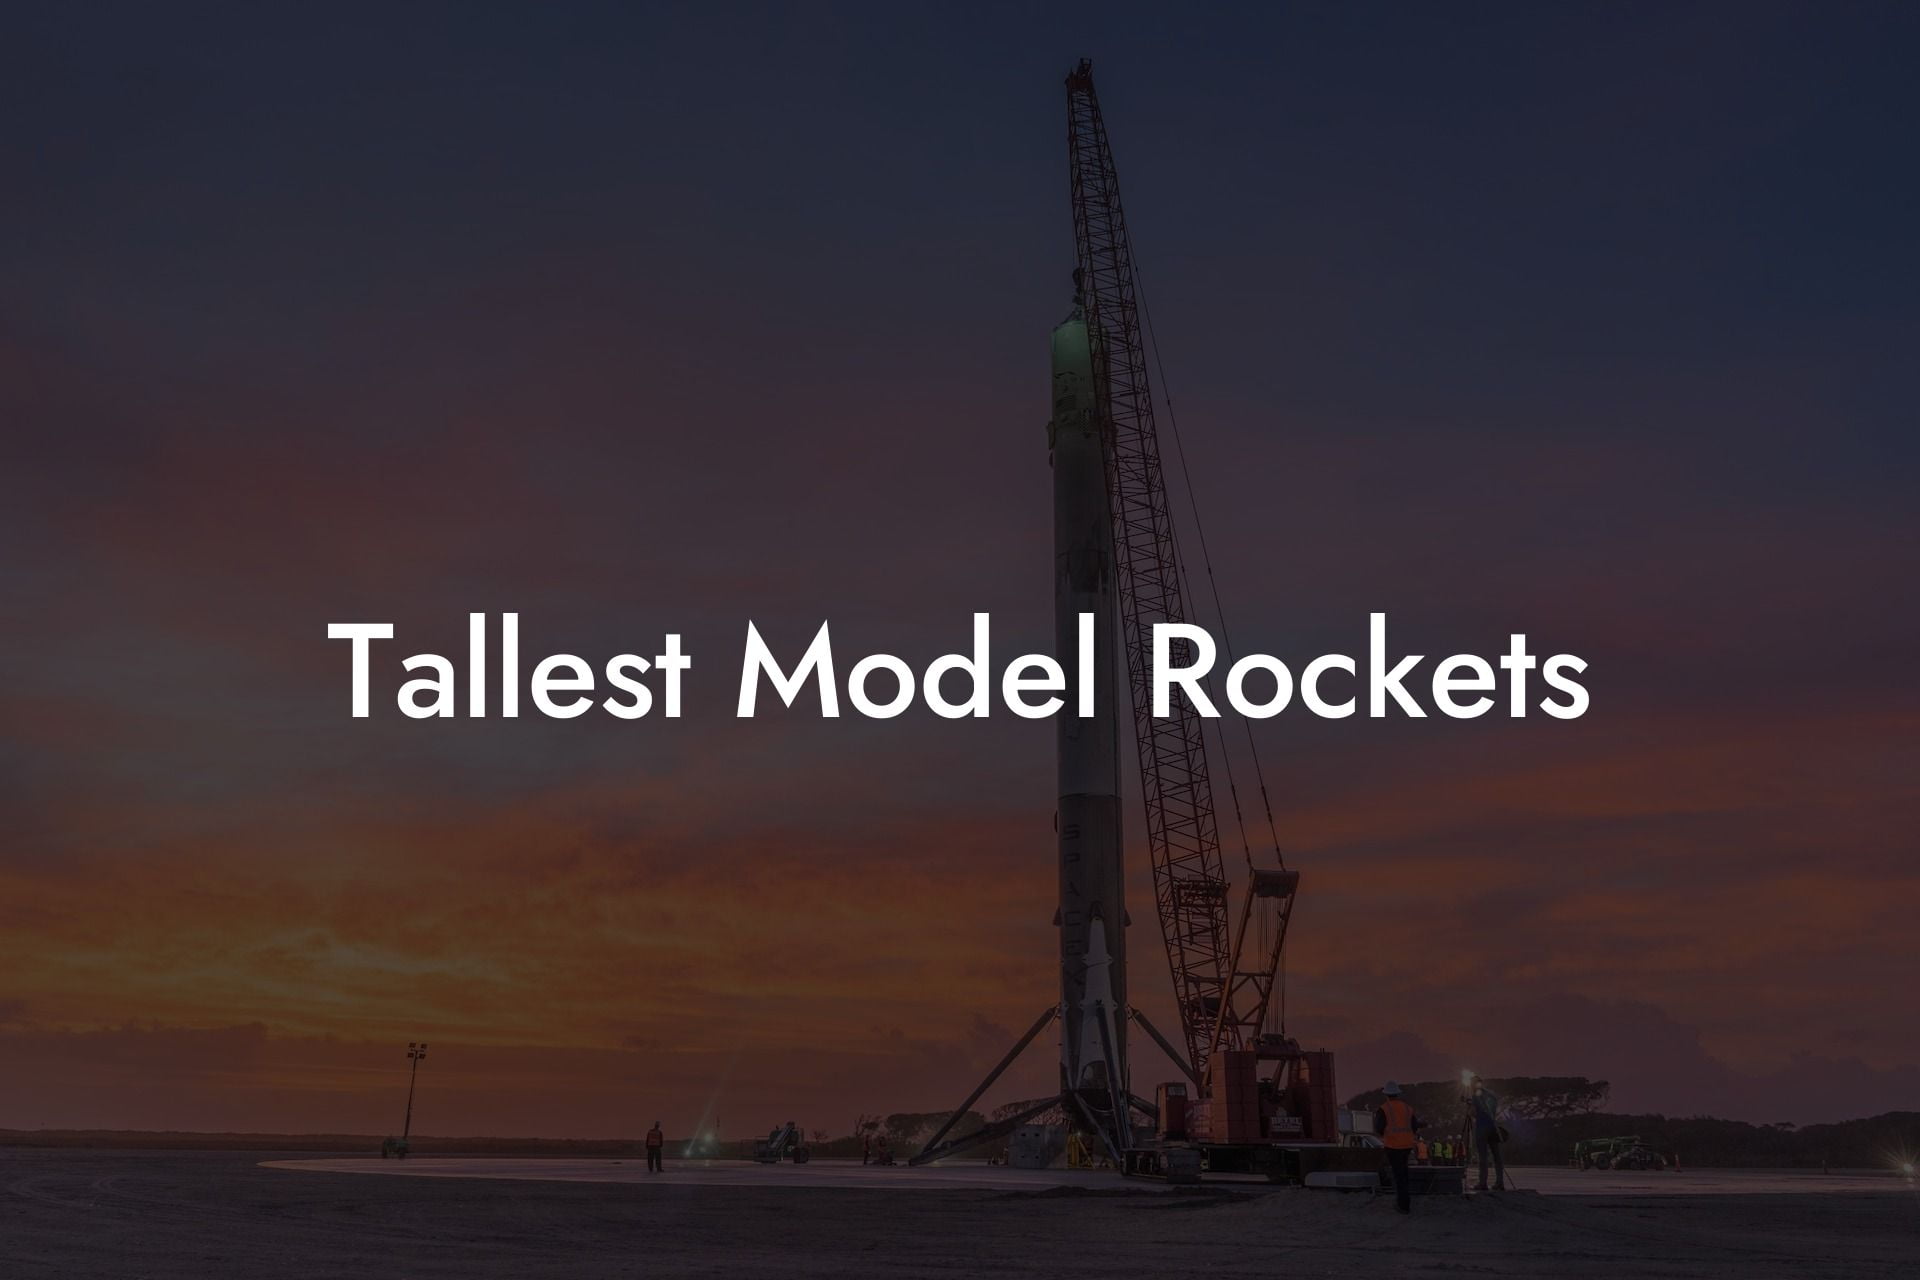 Tallest Model Rockets